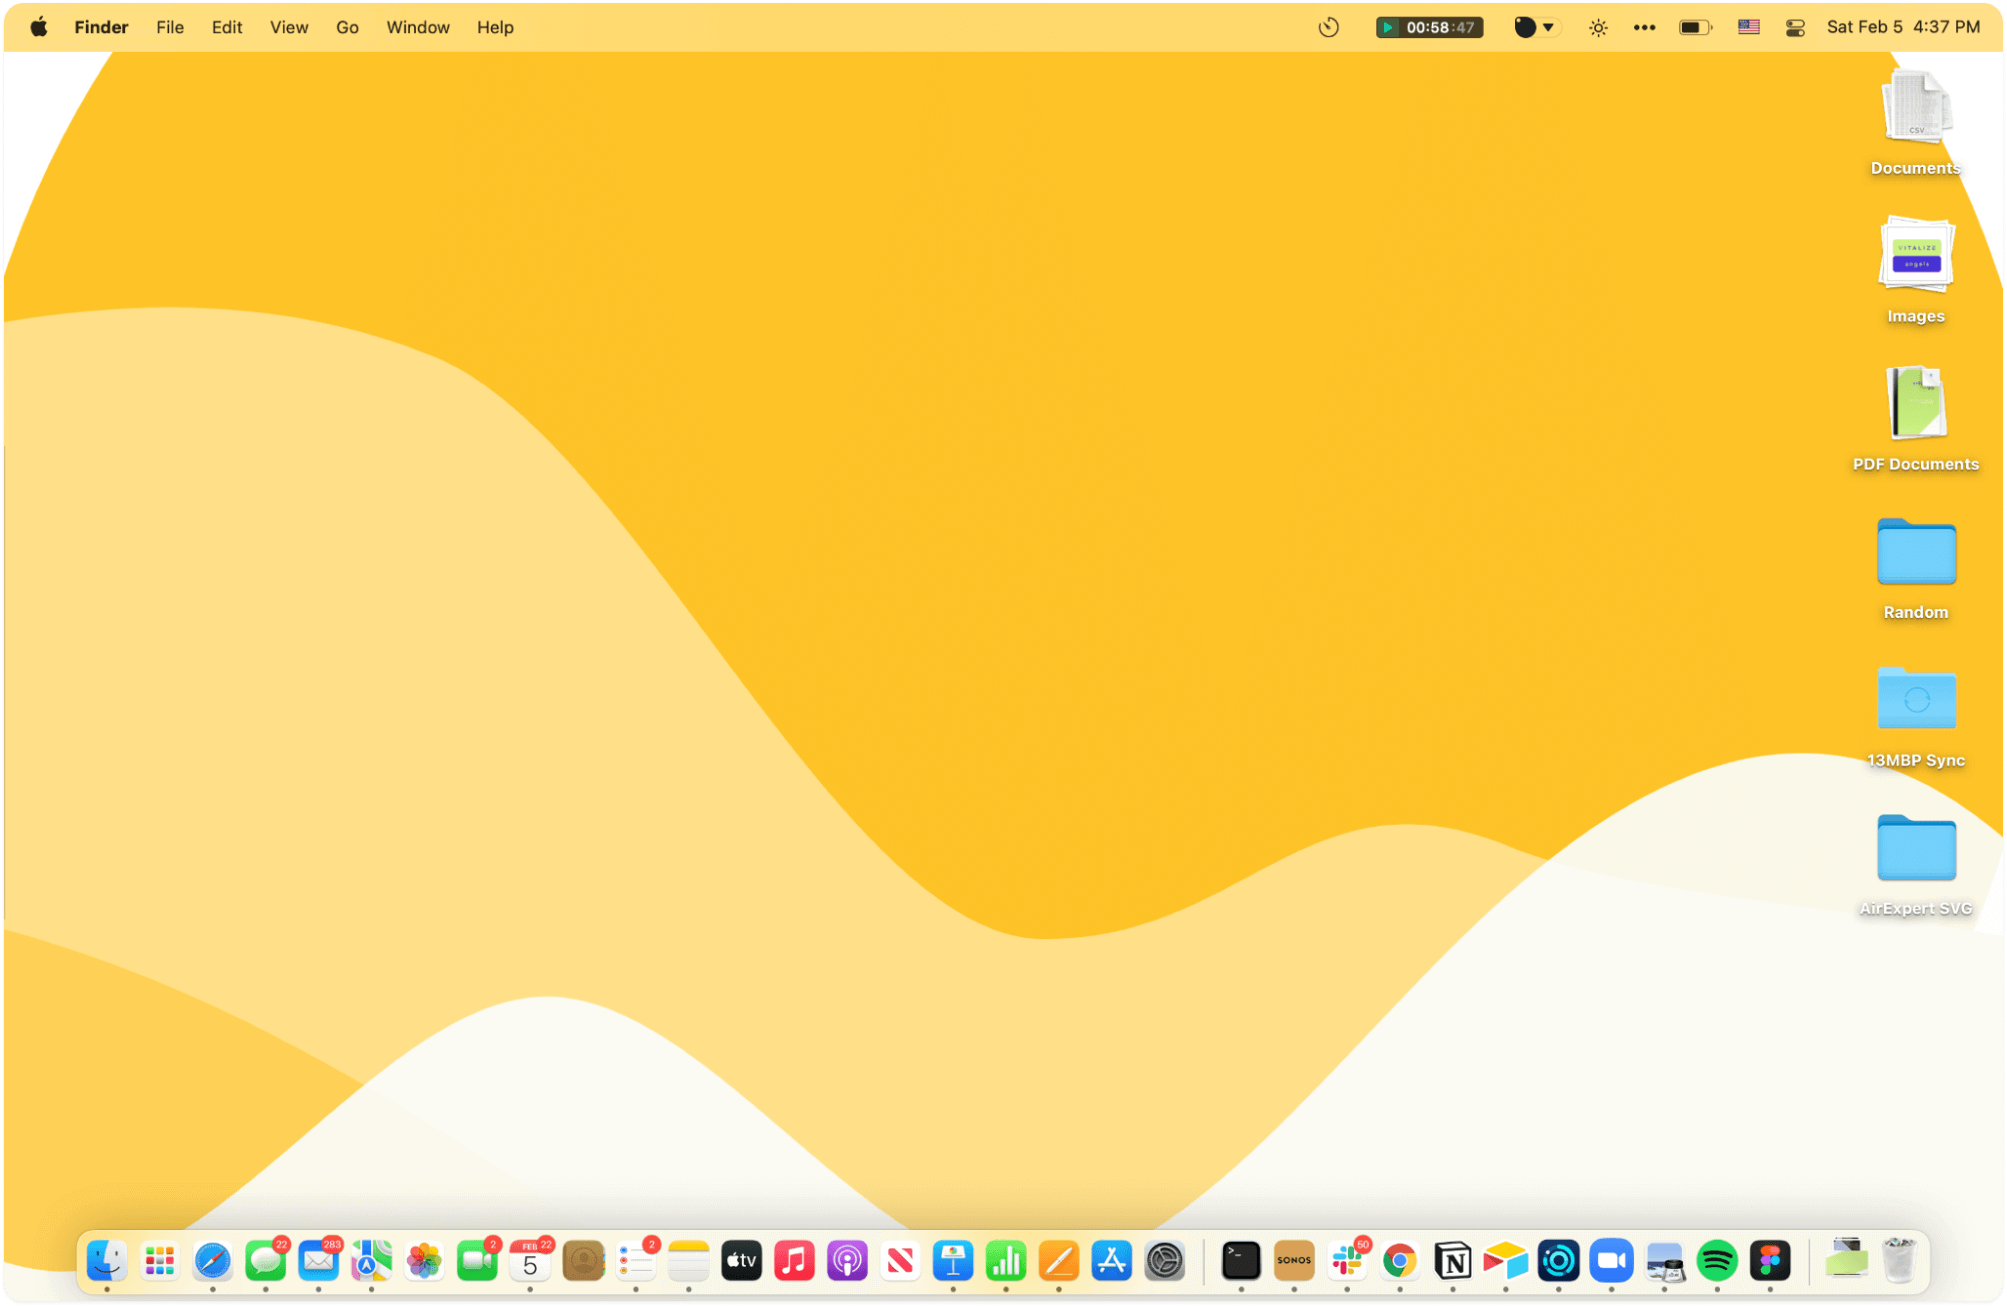 A screenshot of Vick’s current MacBook desktop arrangement